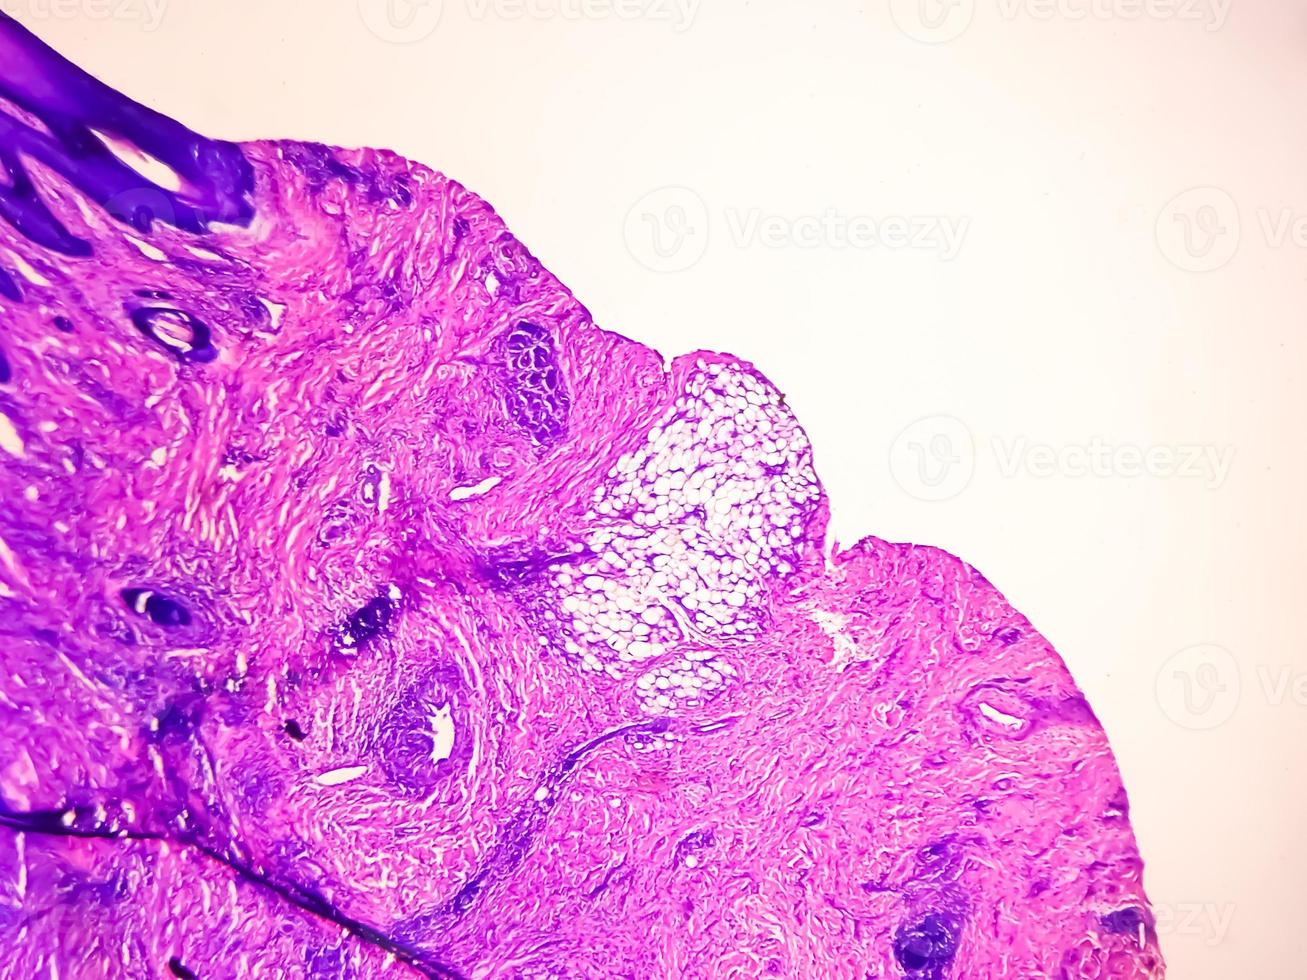 elevato ingrandimento delle cellule della pelle infettate dal virus hpv. verruca comune. verruca volgare. vista microscopica. foto